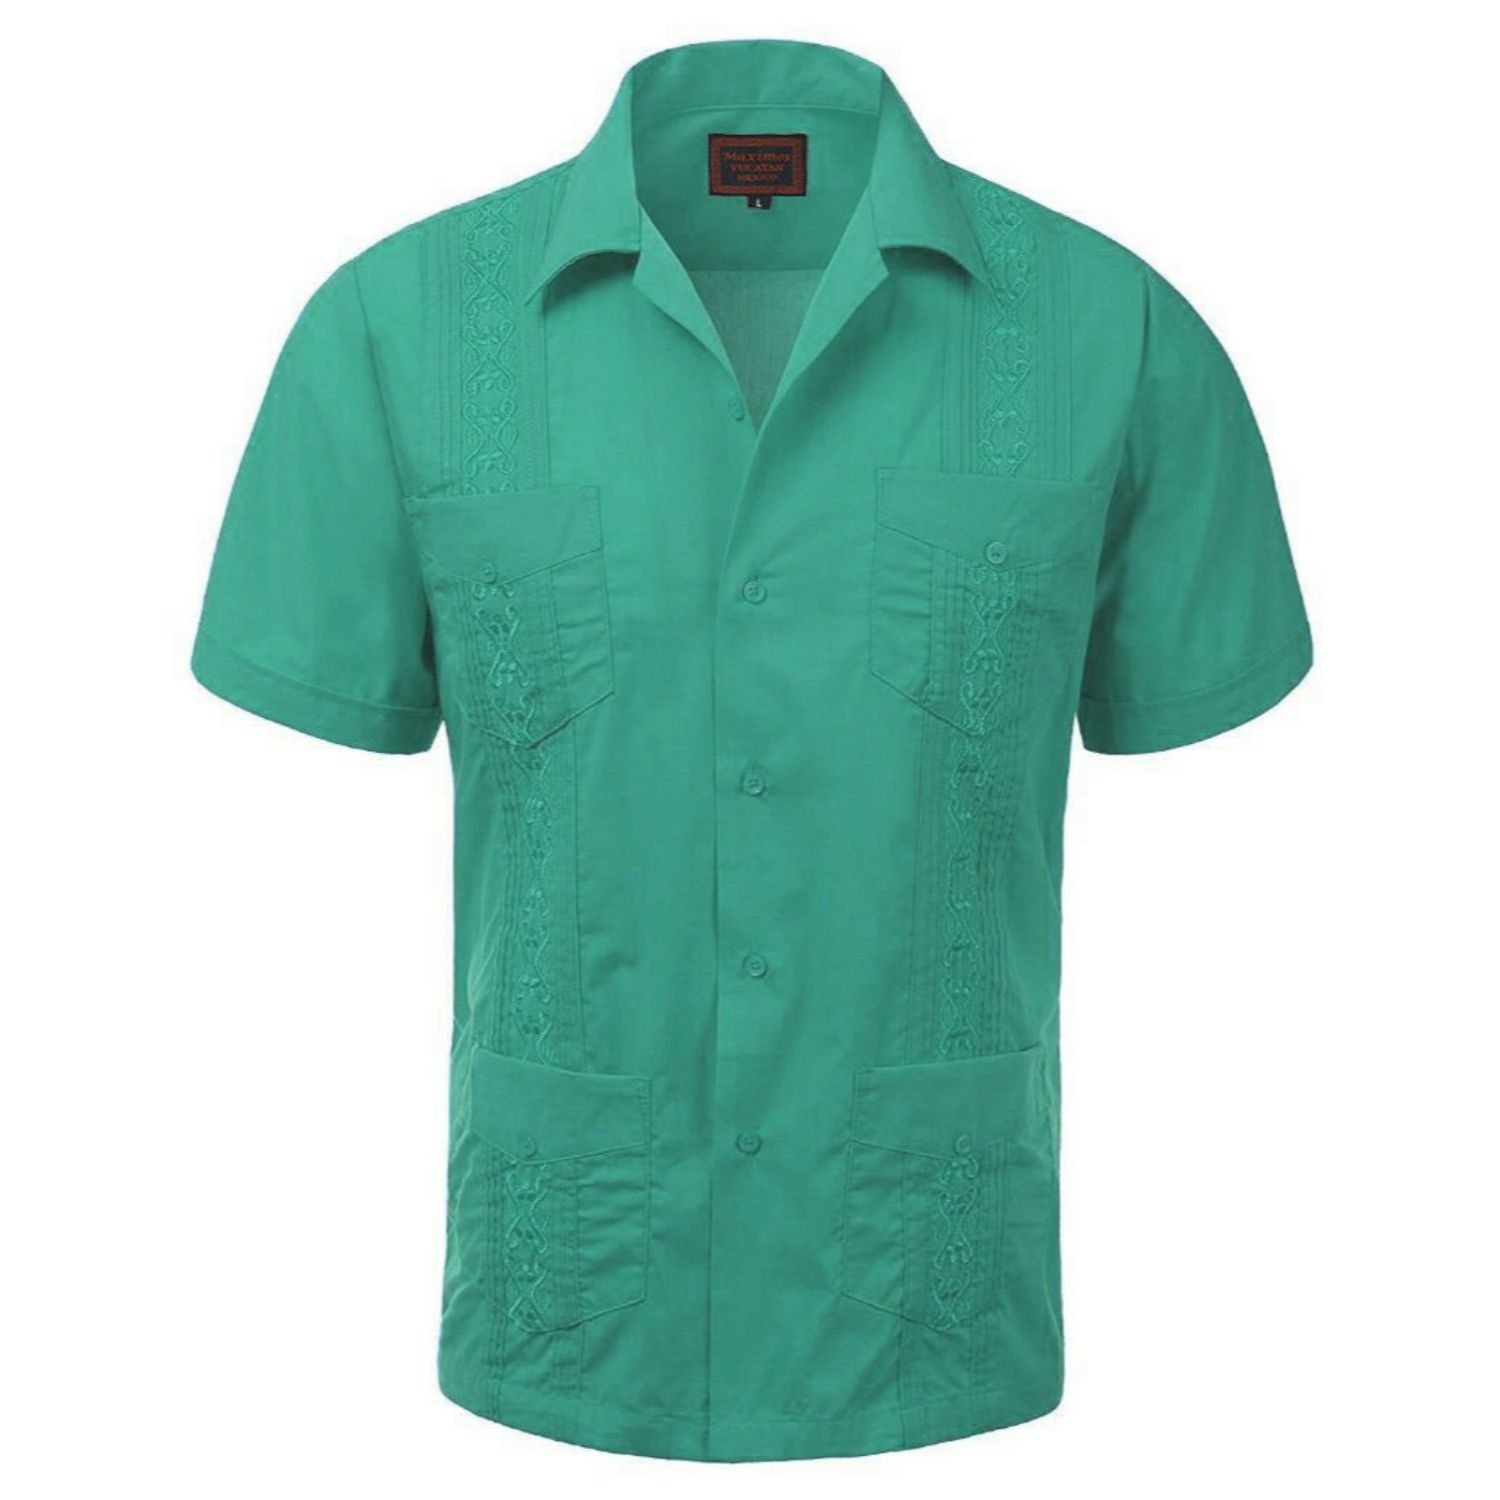 Maximos Men's Guayabera Summer Casual Cuban Beach Wedding Vacation Short Sleeve Button-Up Casual Dress Shirt Mint Green 4XL - image 1 of 1